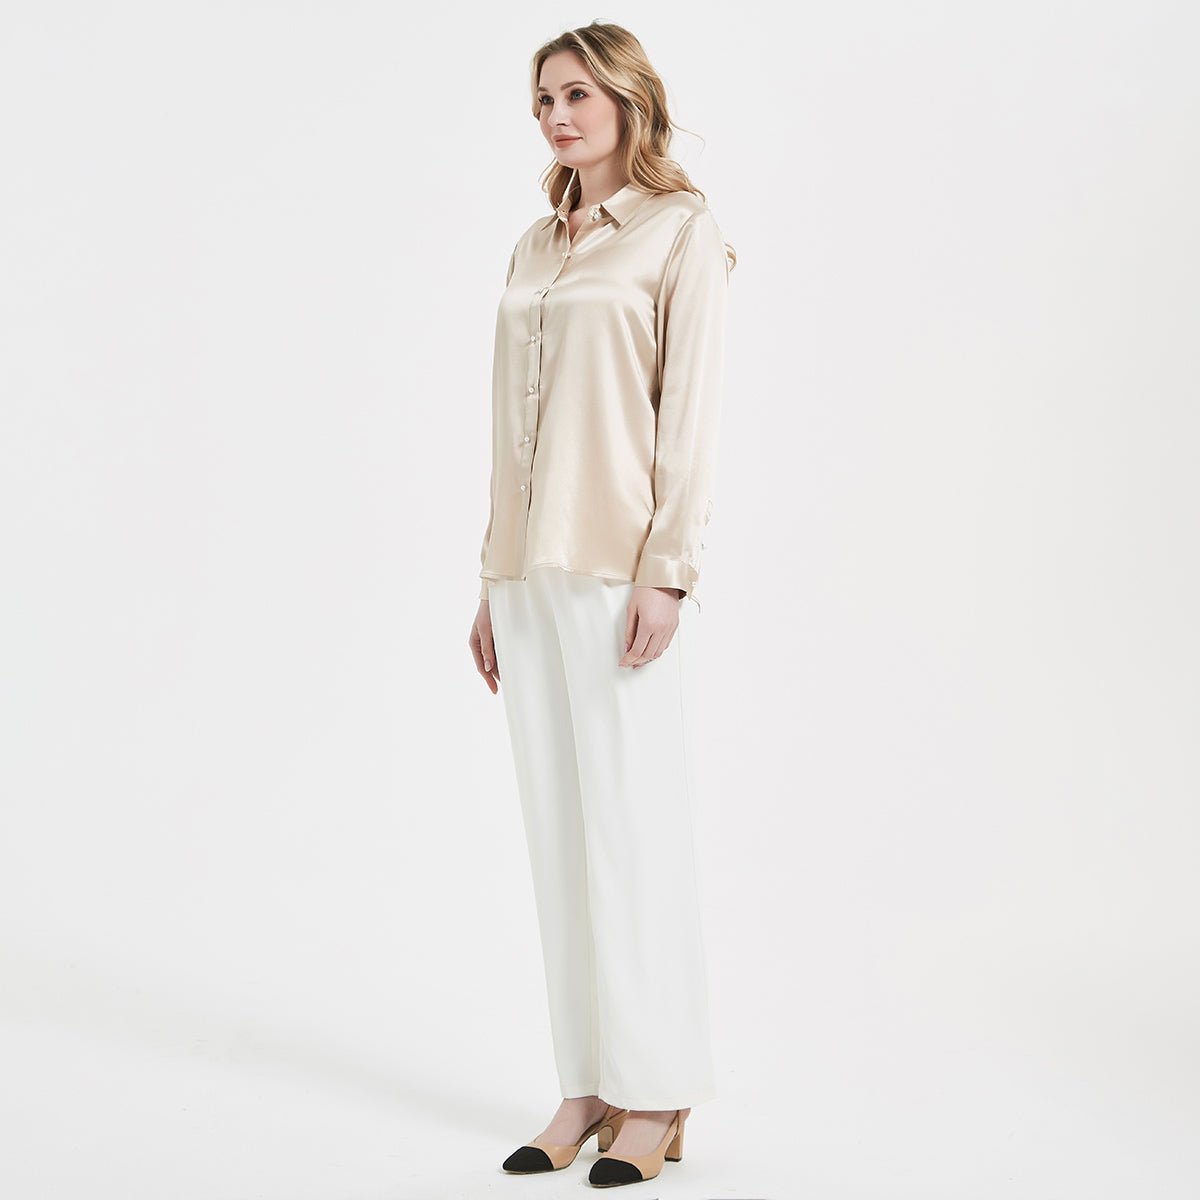 Blusa de seda con hebilla de perla para mujer elegante camisa de manga larga de seda de morera 100%